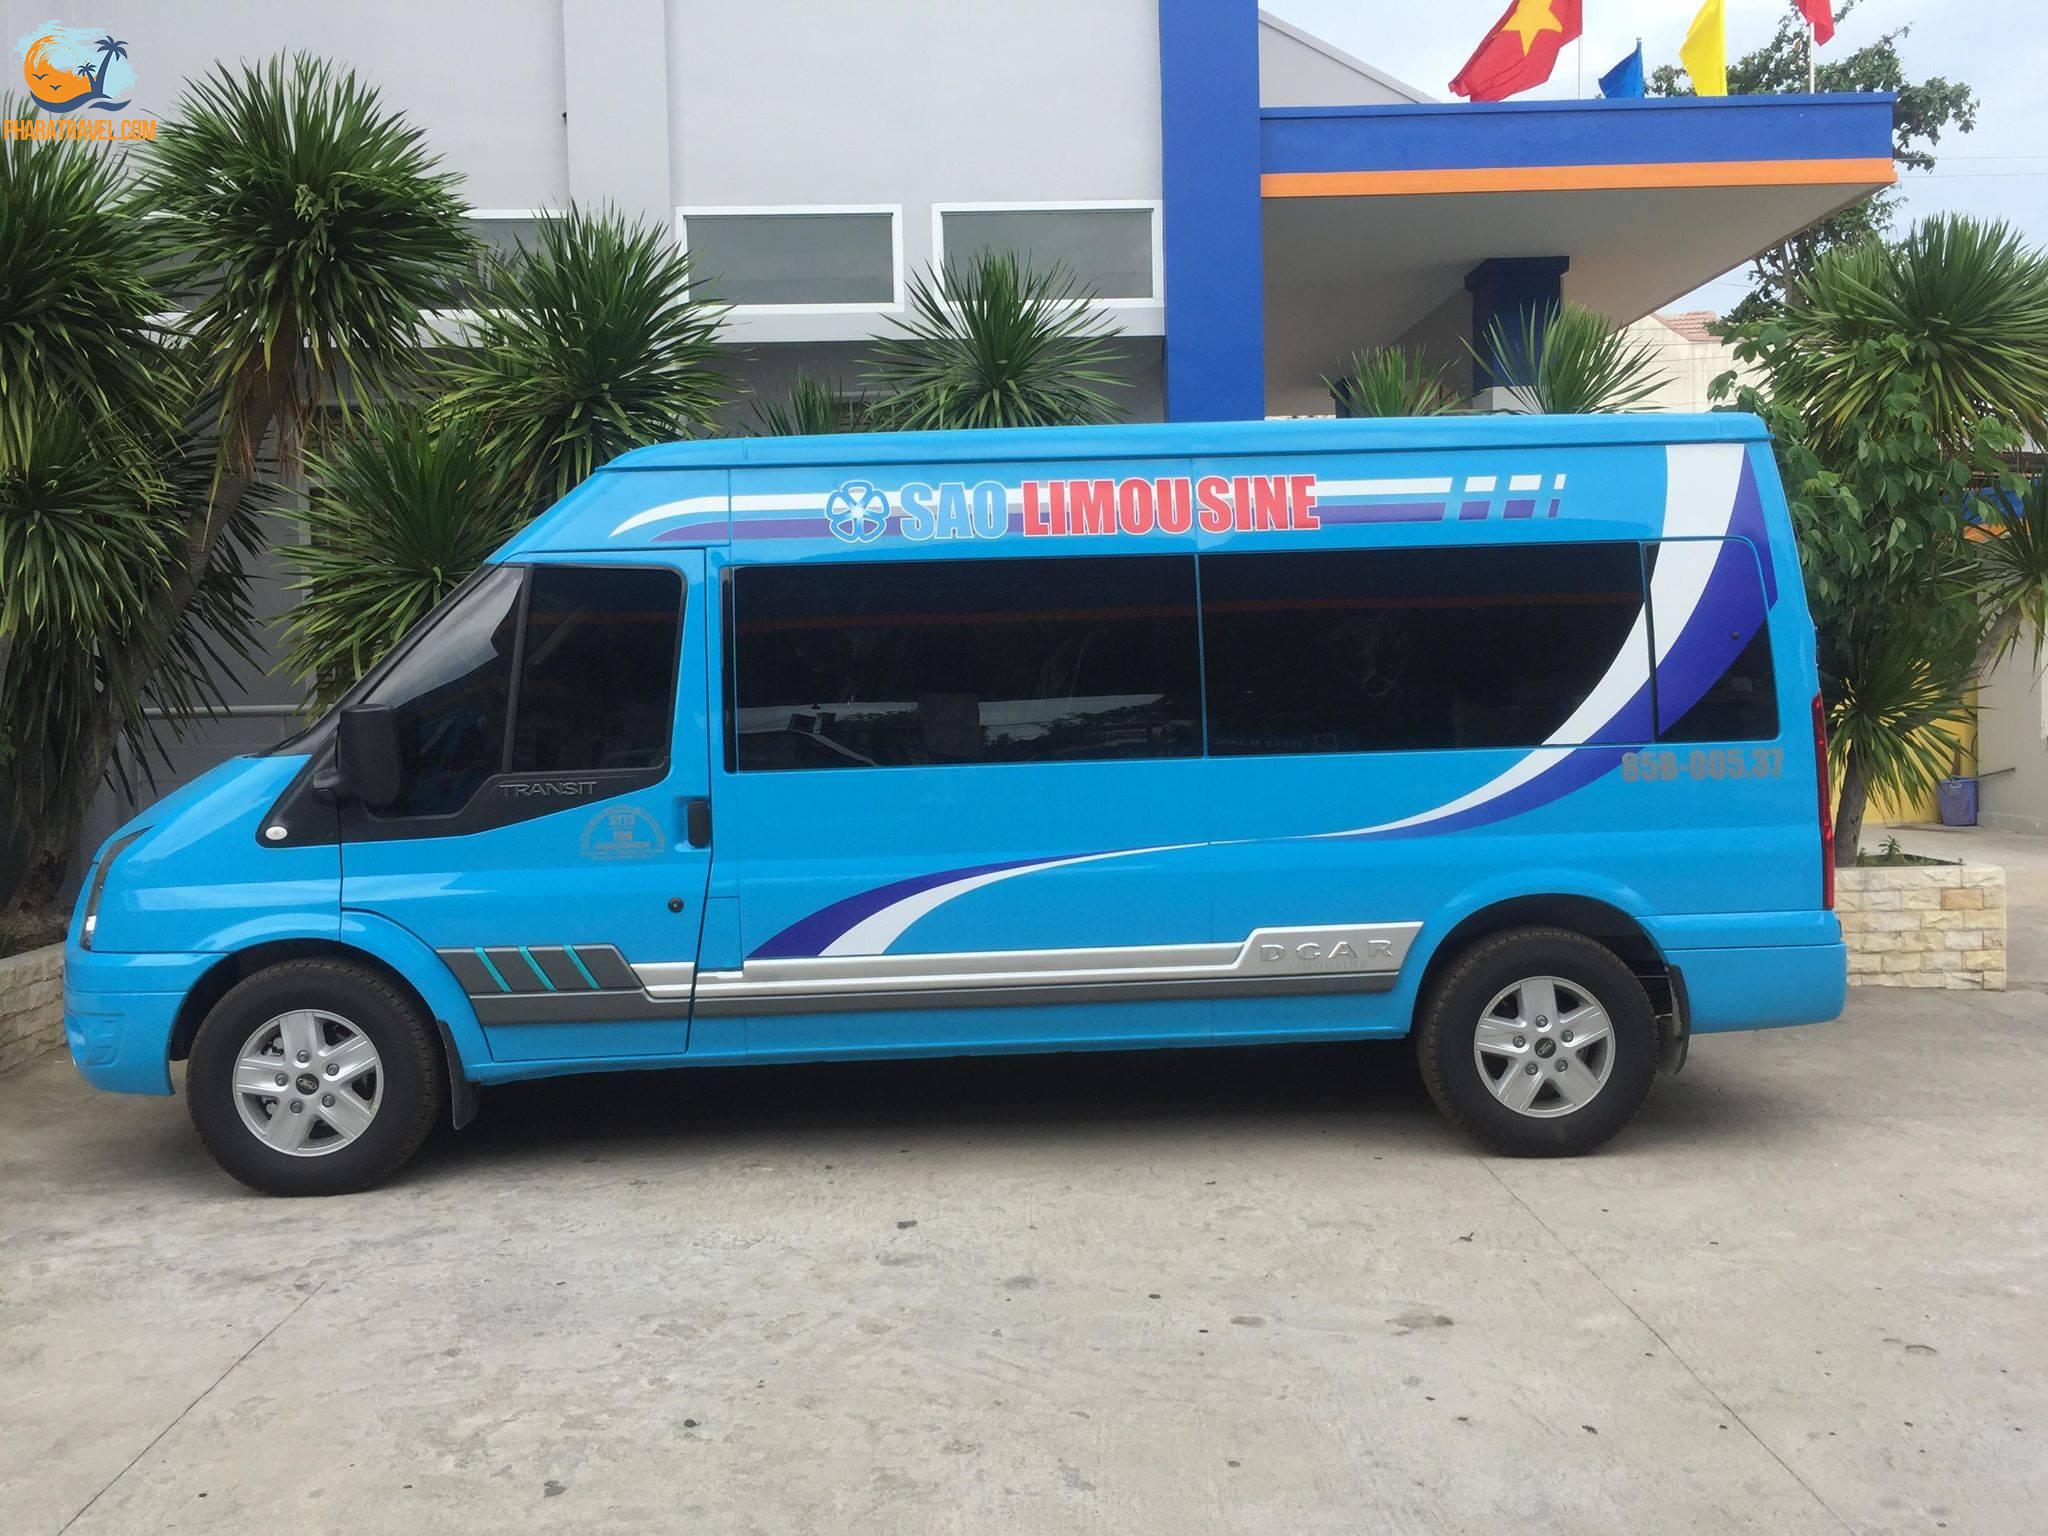 Nhà xe Sao limousine Nha Trang Phan Rang: giá vé, số điện thoại đặt vé